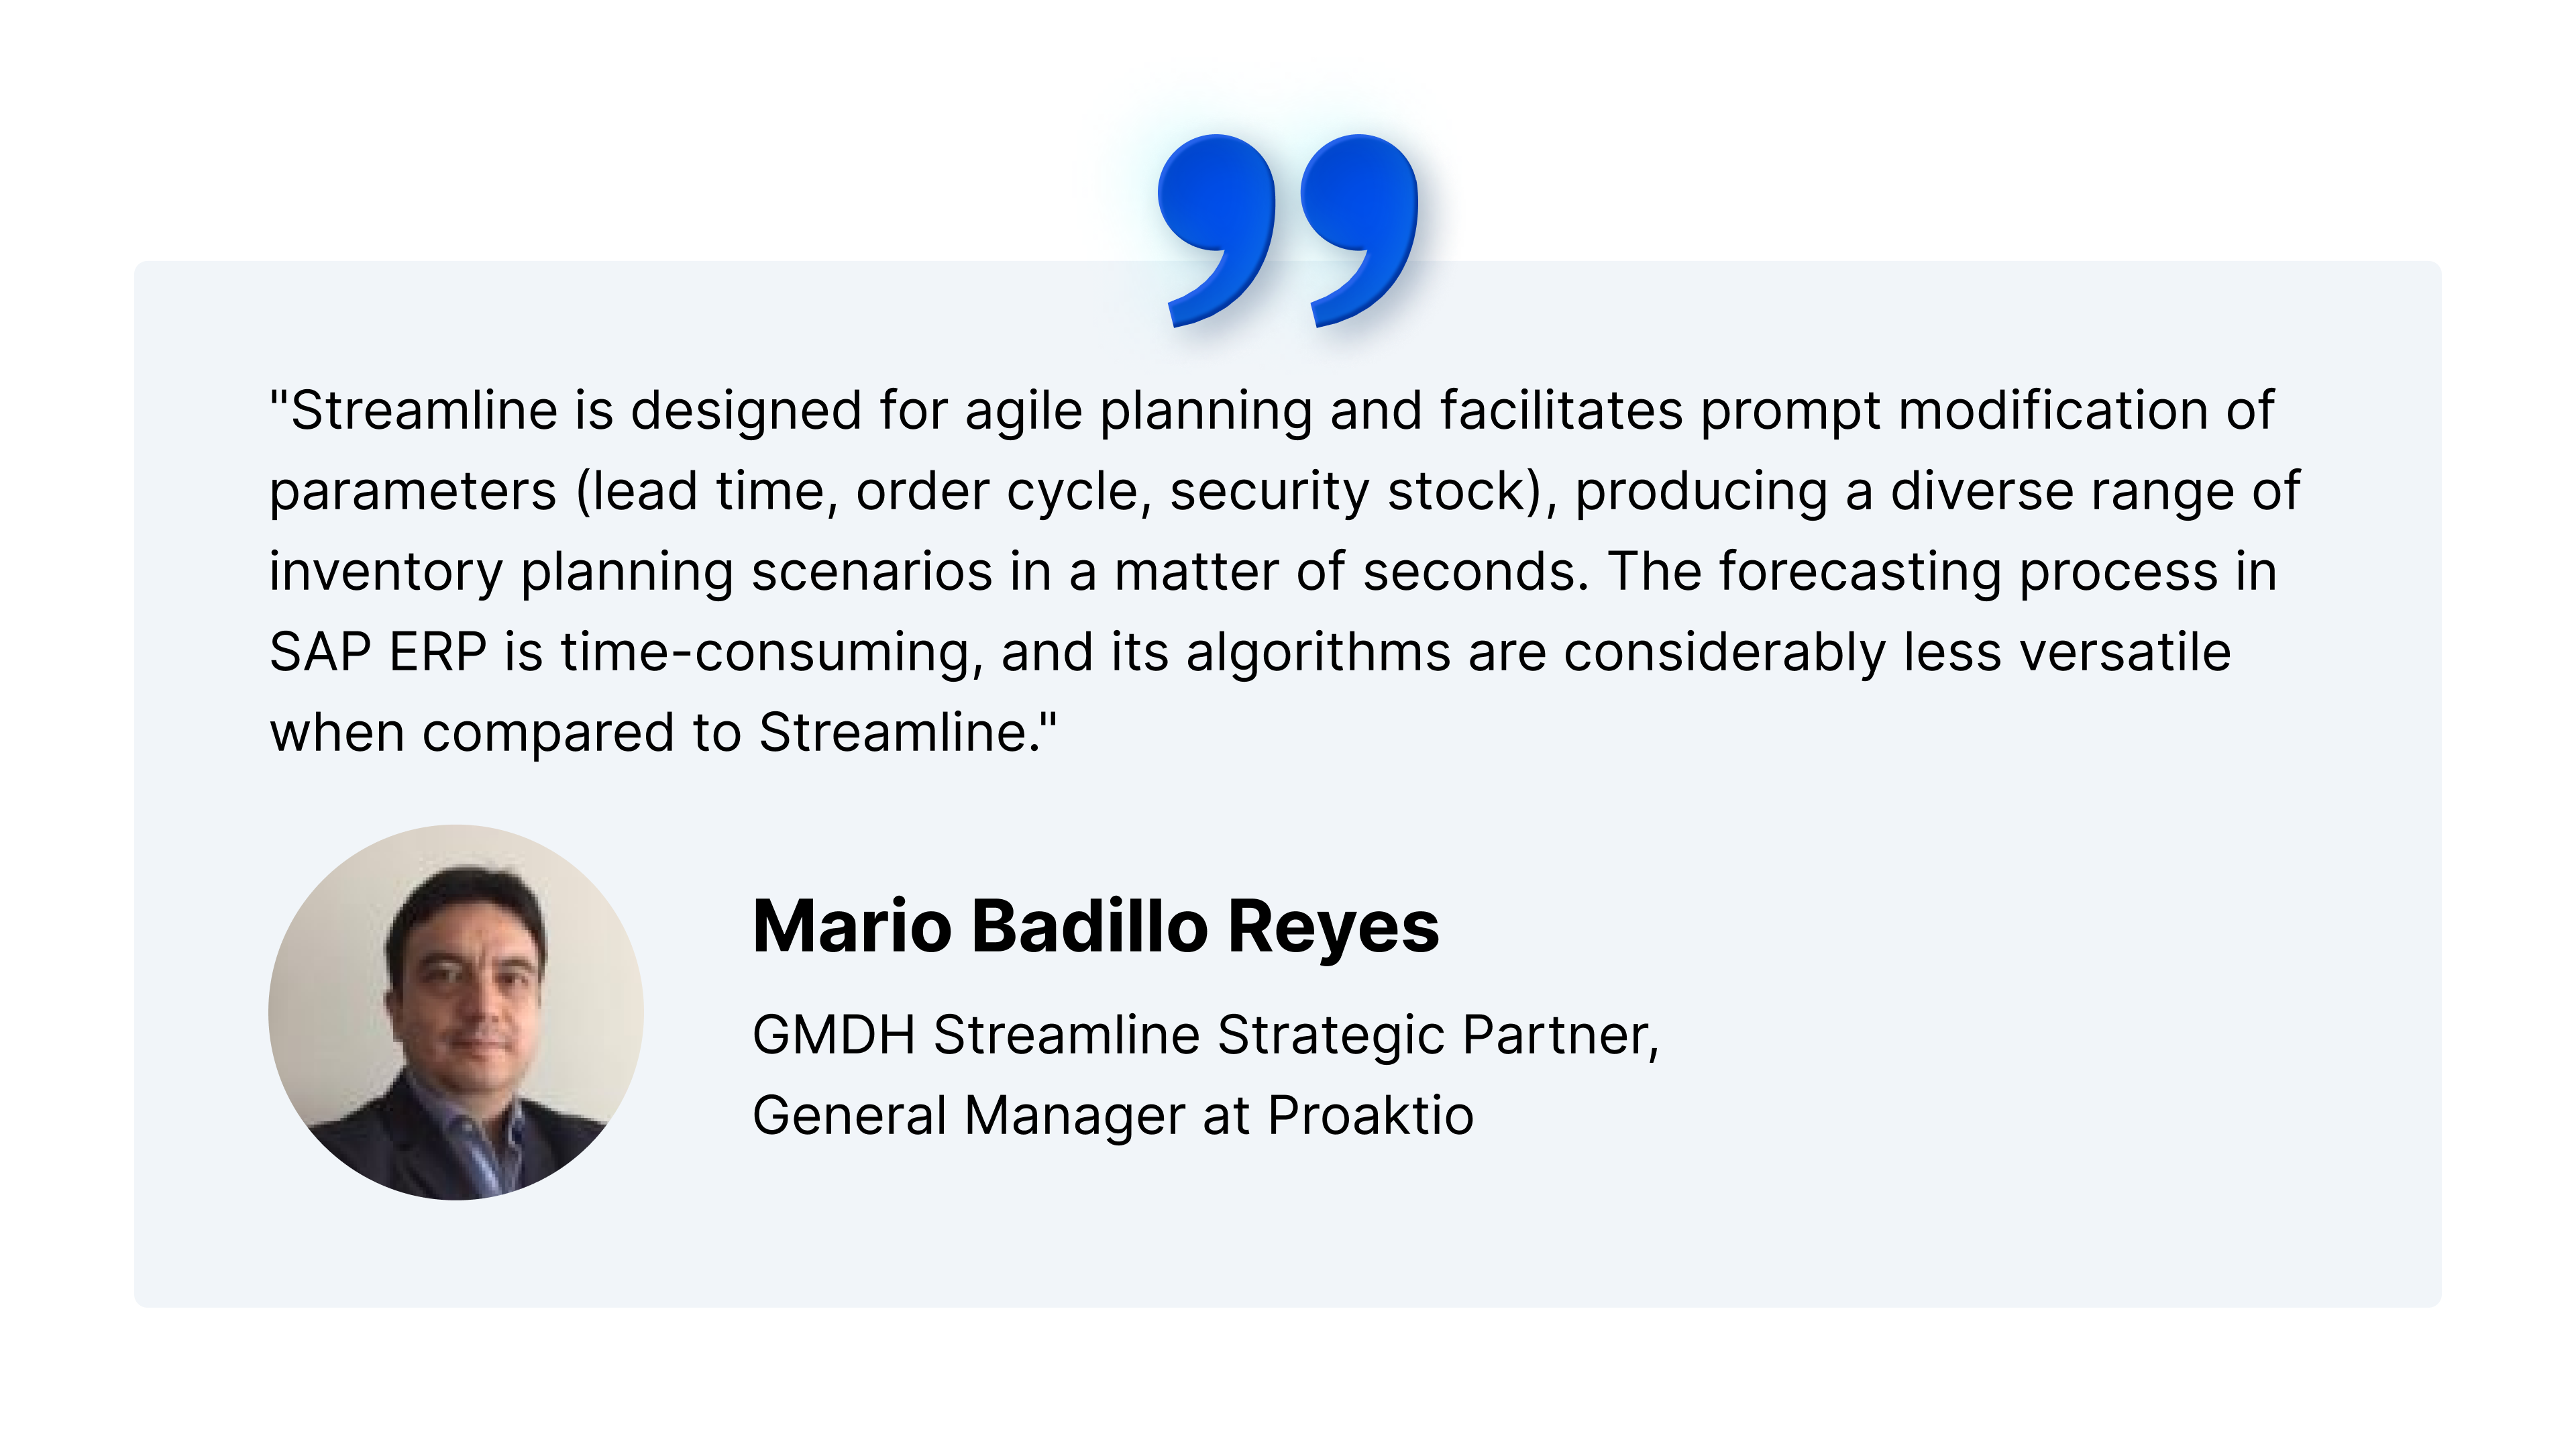 คำรับรองของ Mario Badillo เกี่ยวกับประโยชน์ของการใช้ SAP ERP และ Streamline ร่วมกัน